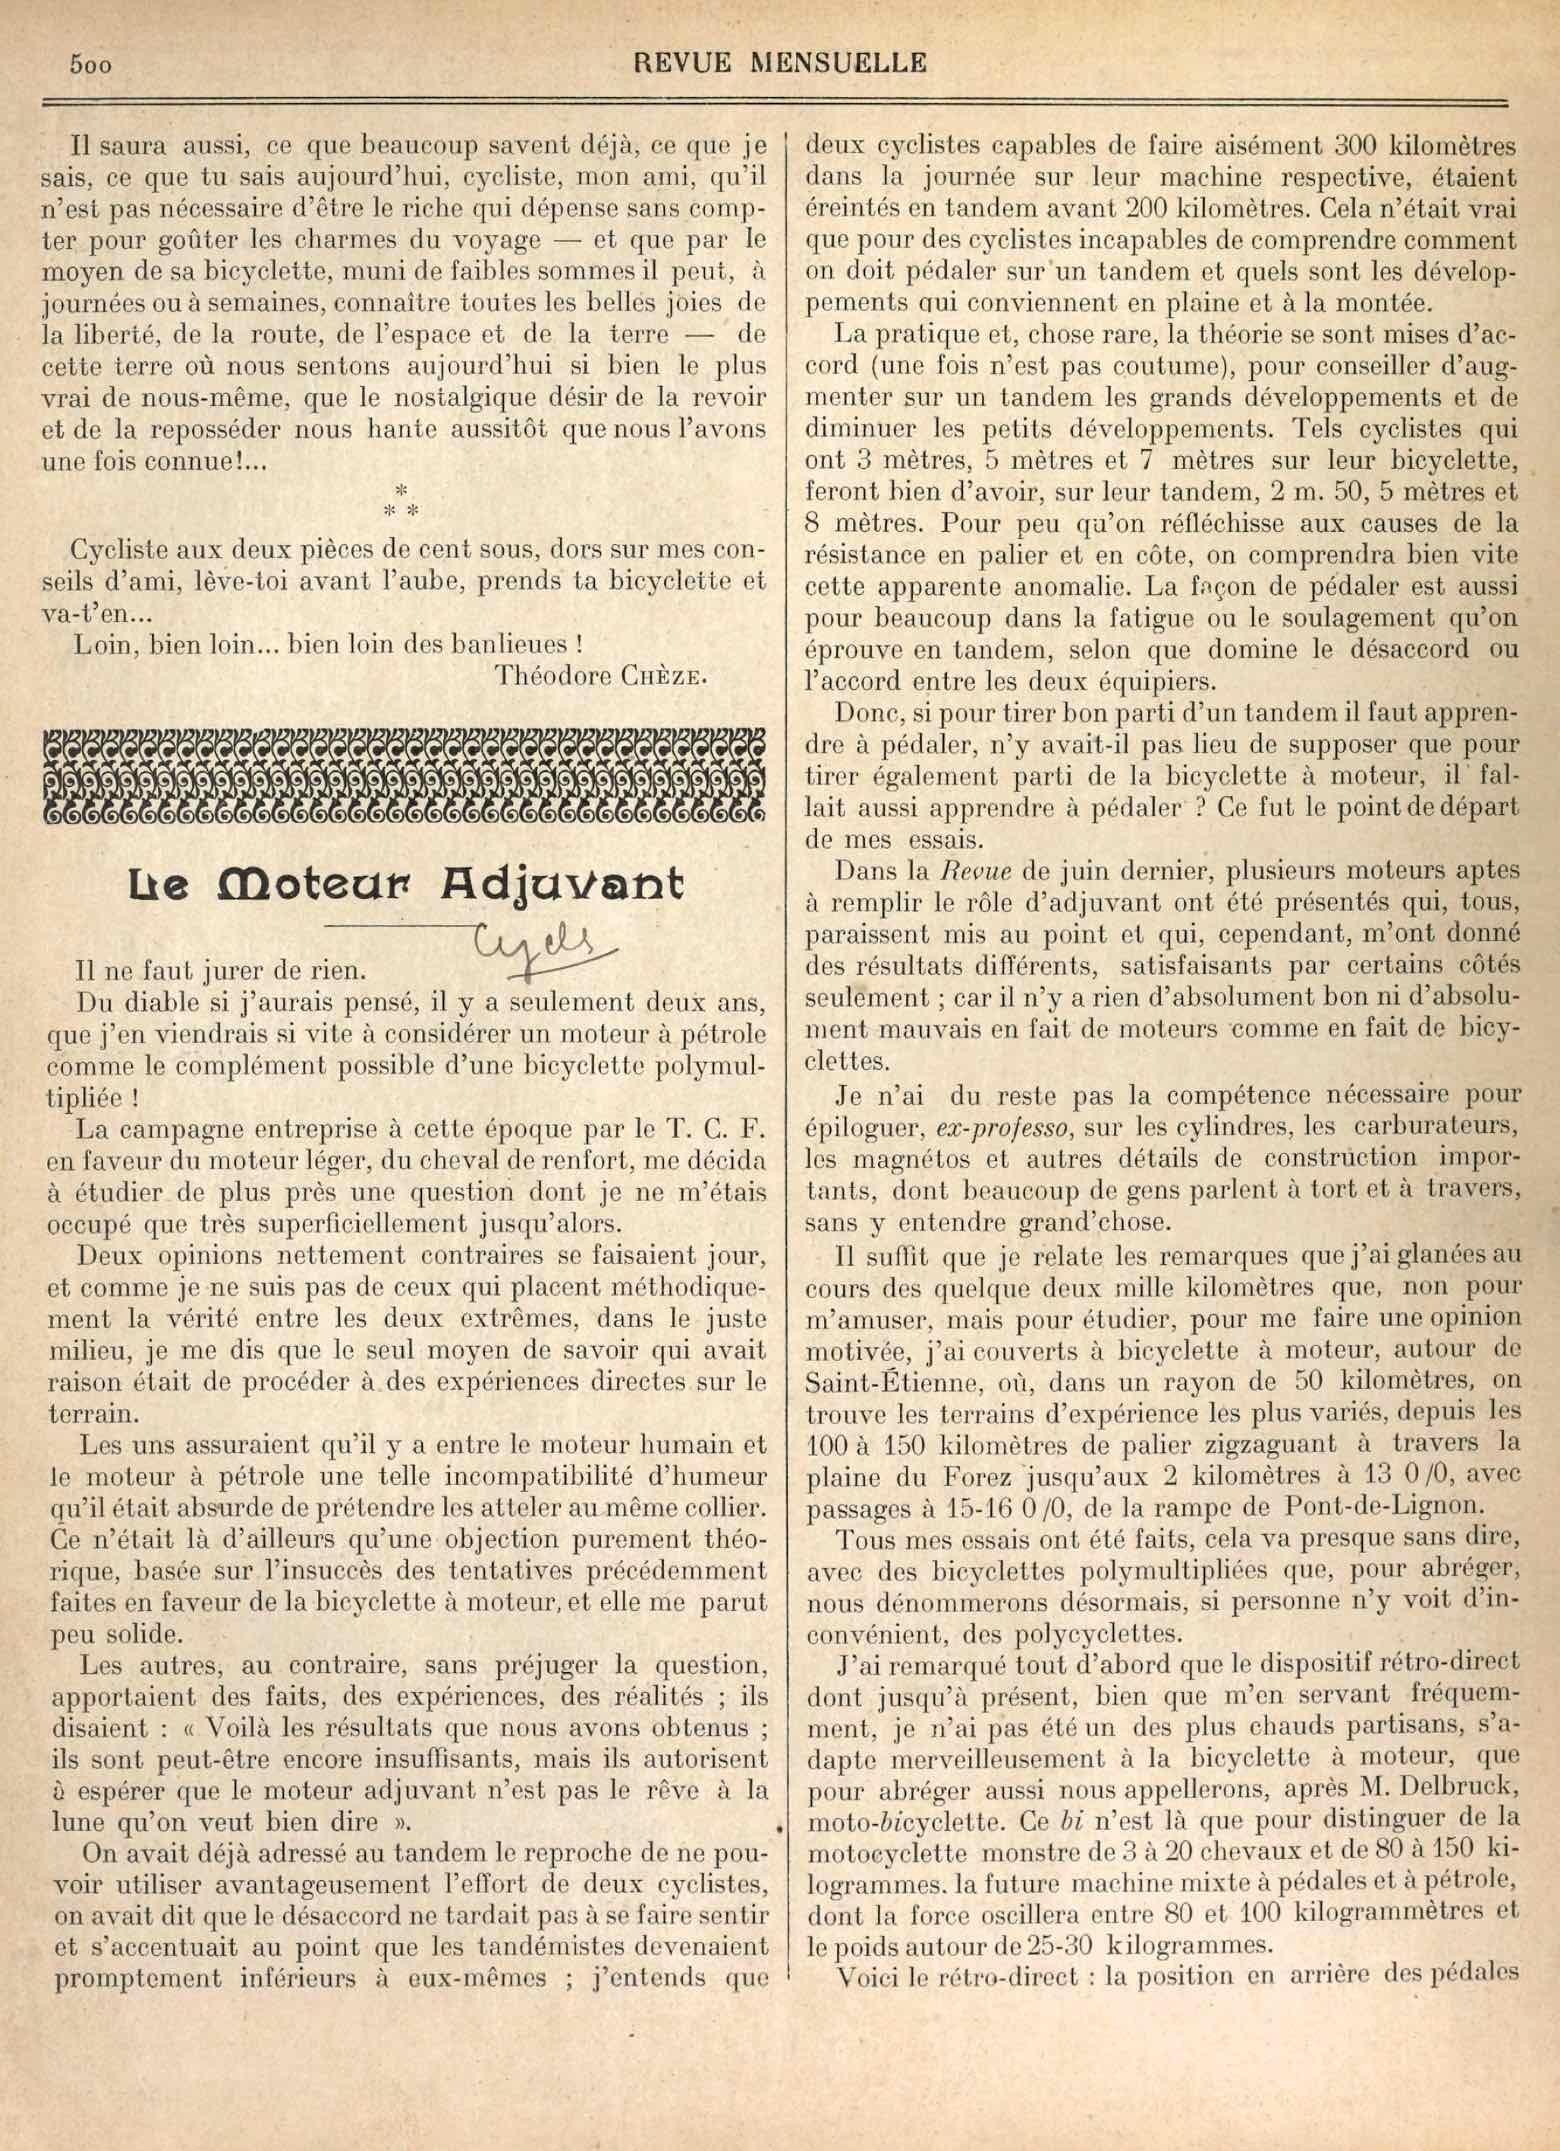 T.C.F. Revue Mensuelle November 1906 - Le Moteur Adjuvant scan 1 main image